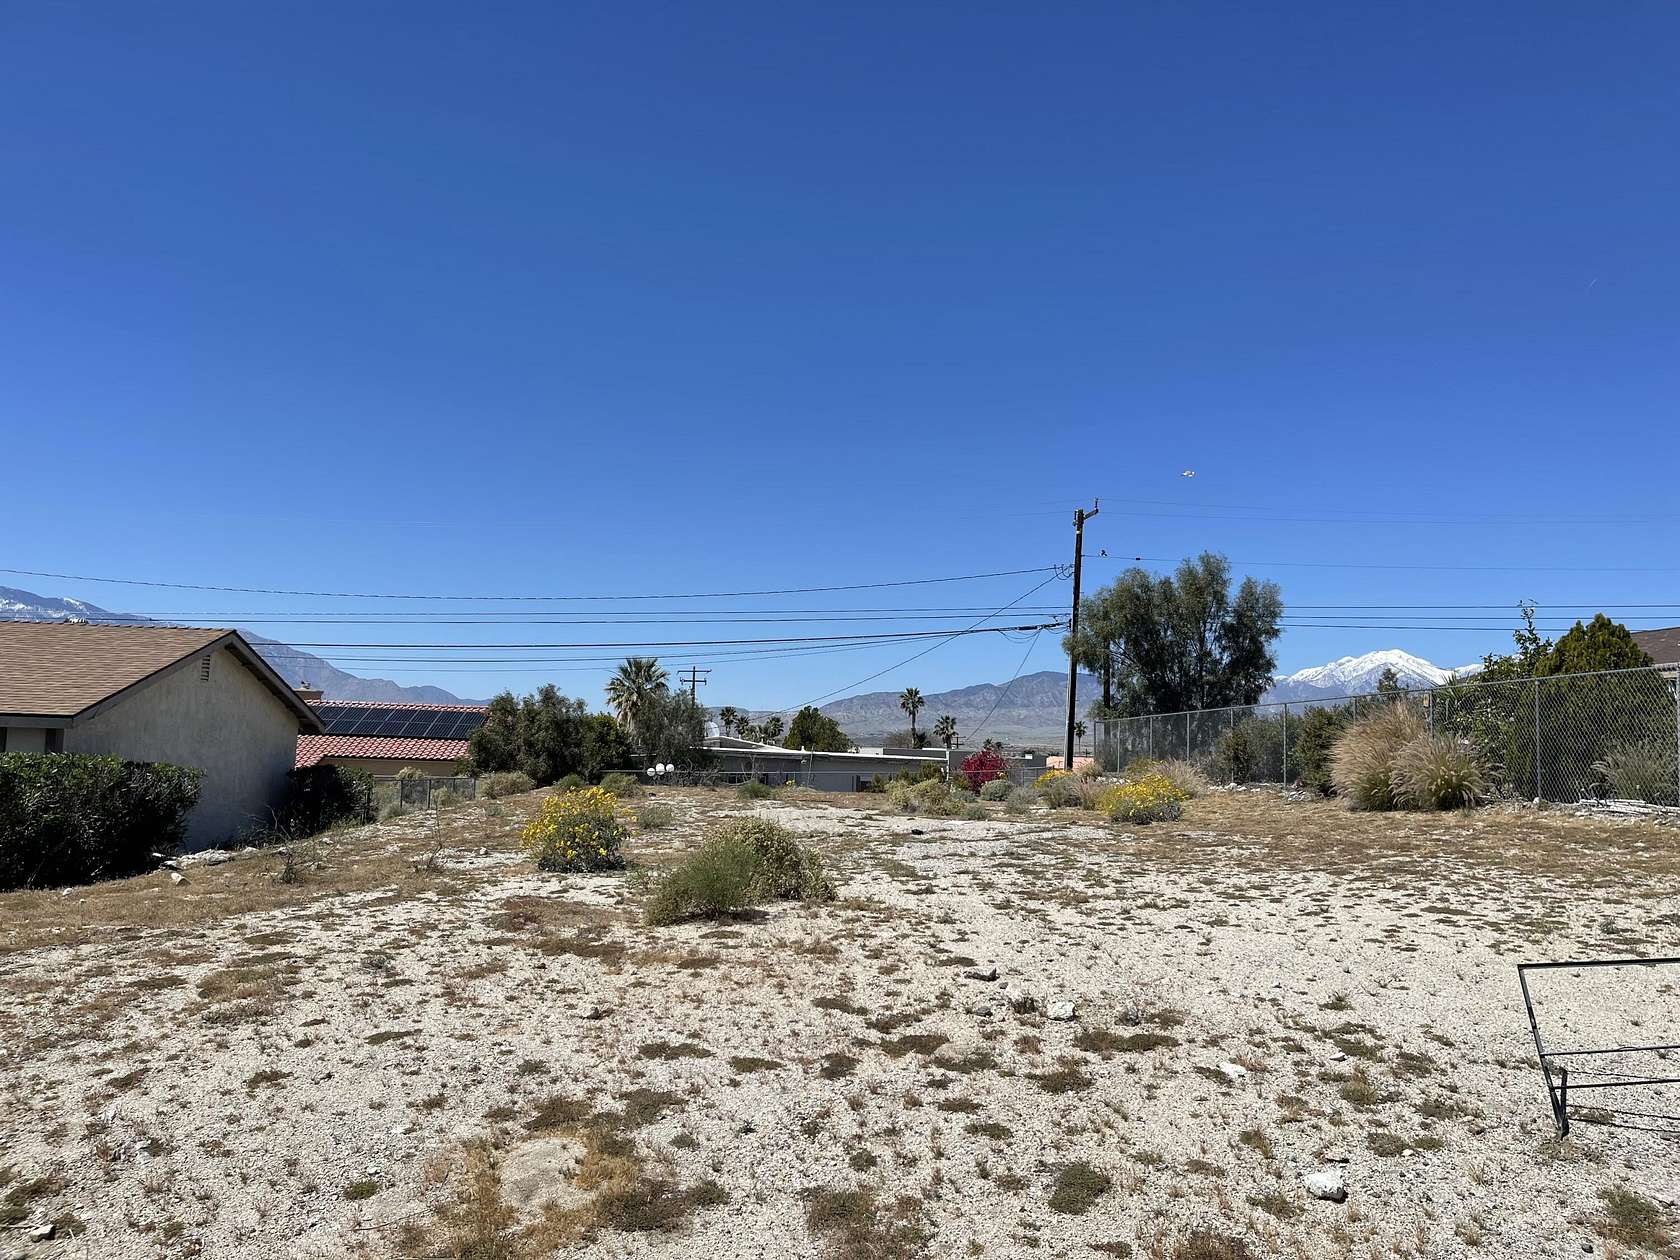 0.16 Acres of Residential Land for Sale in Desert Hot Springs, California